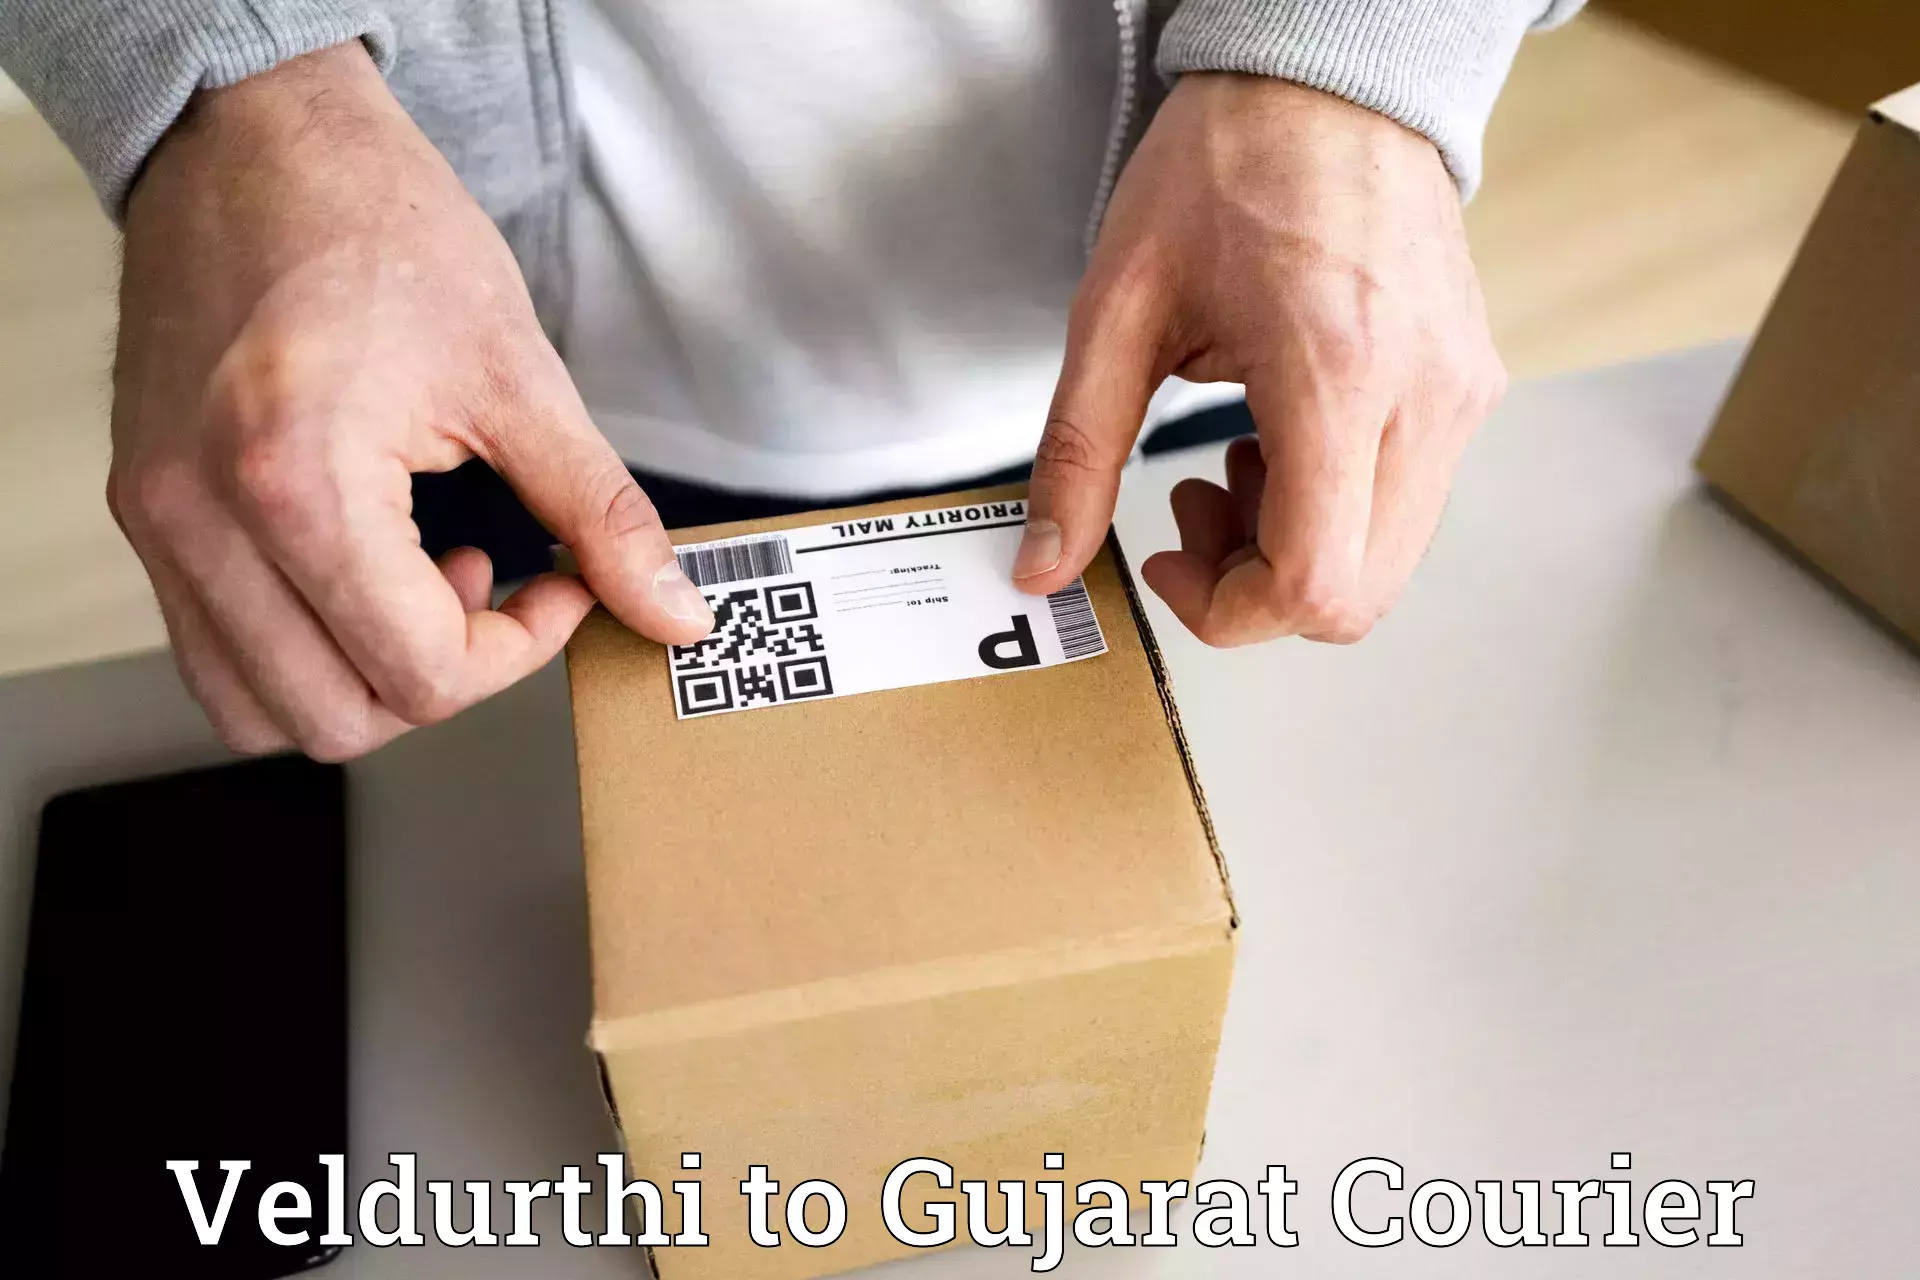 Courier tracking online Veldurthi to Dahej